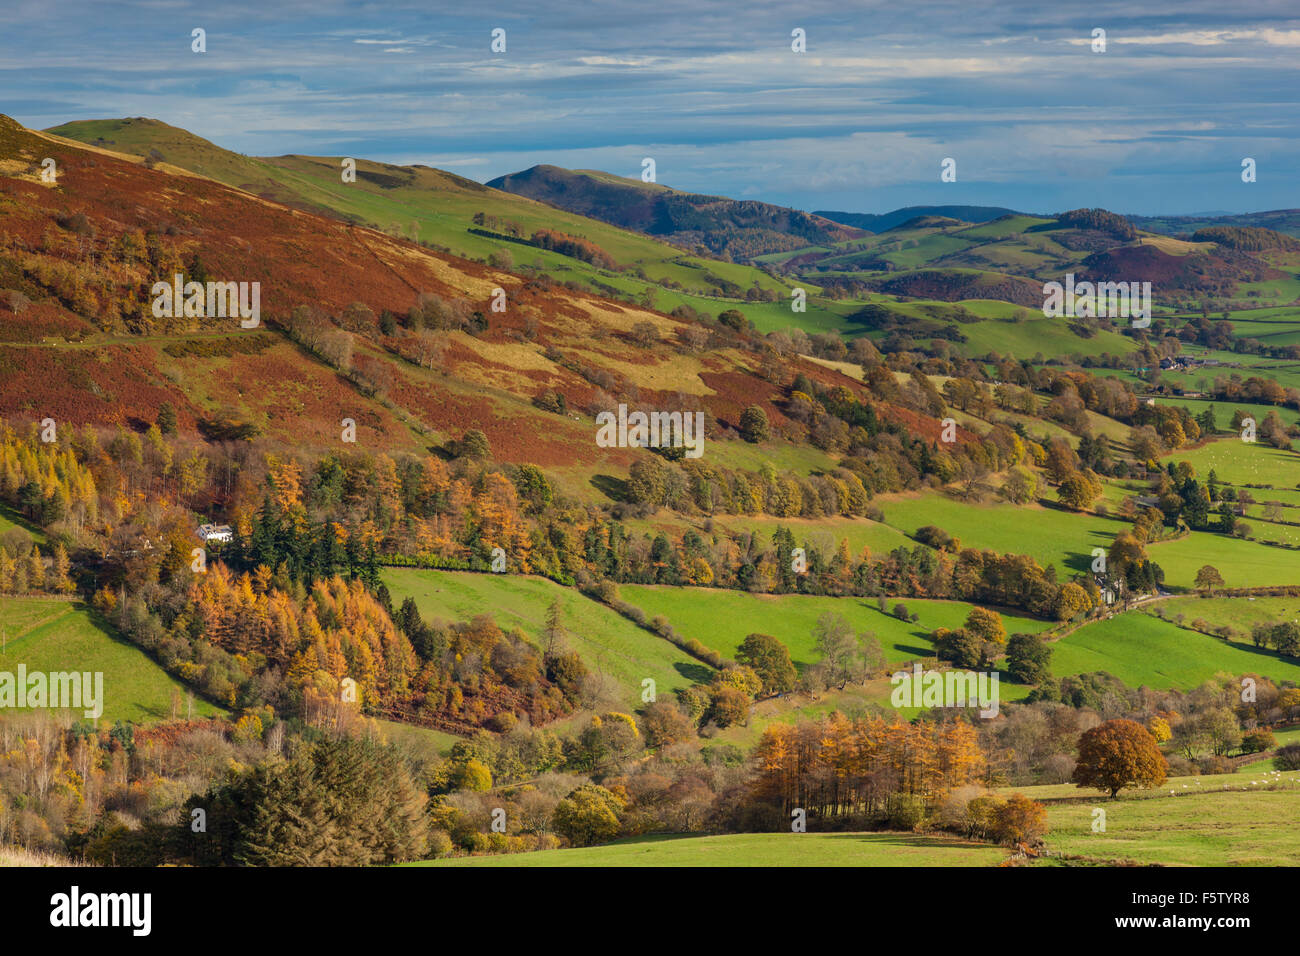 Moel Hen-fache vu du côté de Glan-hafon, près de Llanrhaeadr-ym-Mochnant, Powys, Wales Banque D'Images